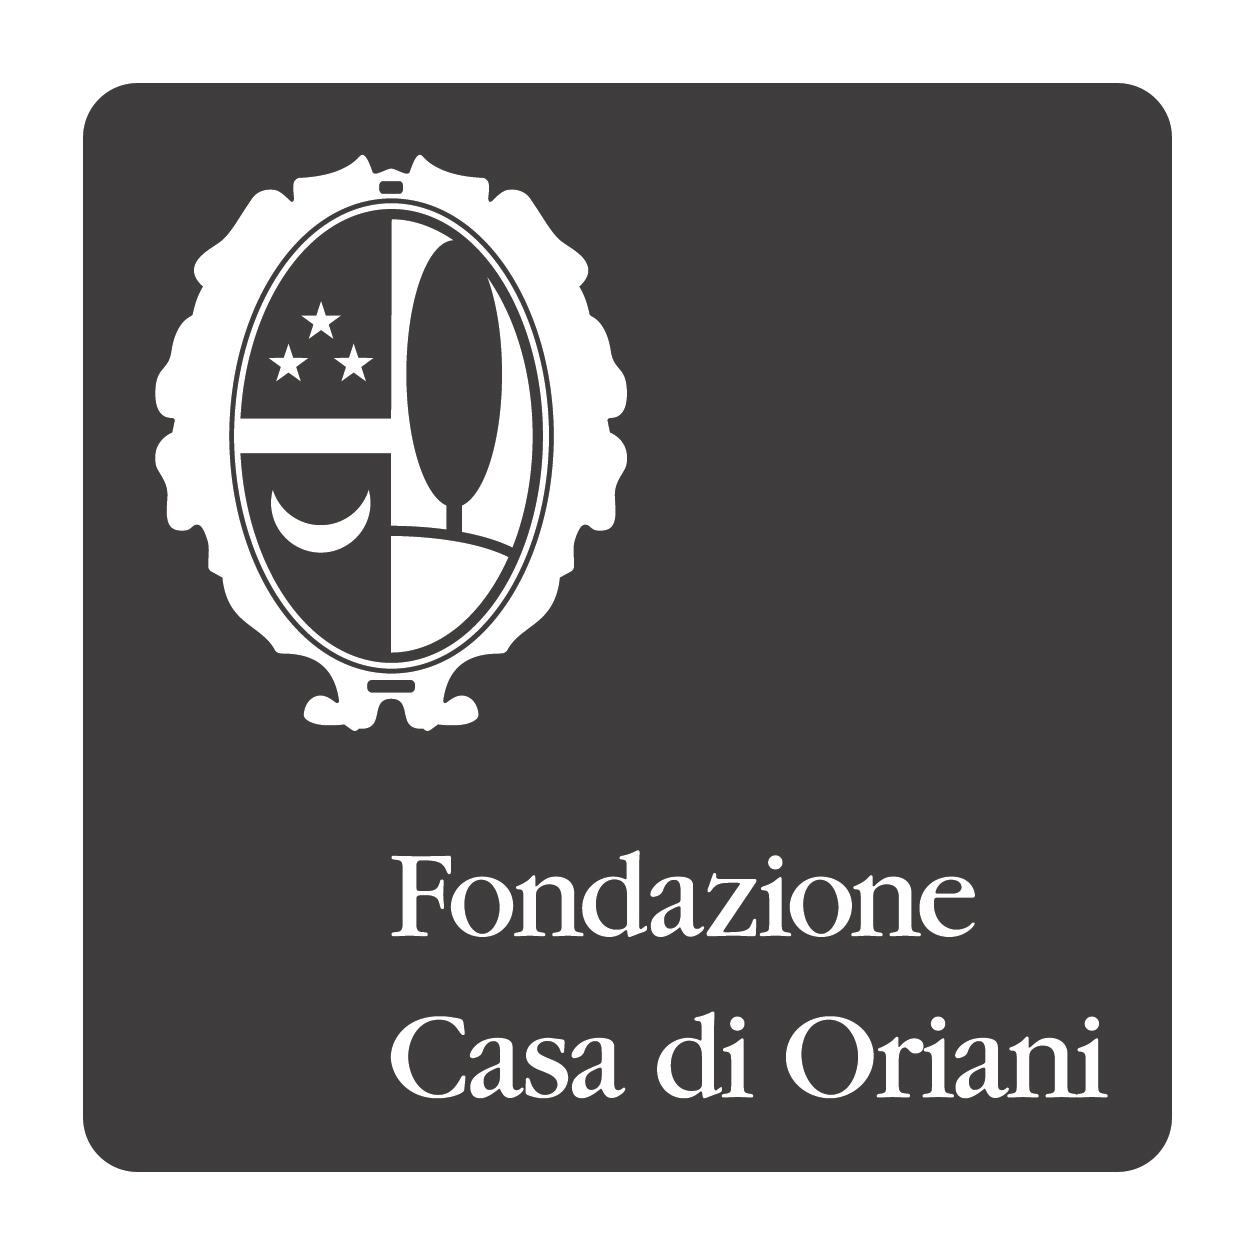 Fondazione Casa di Oriani